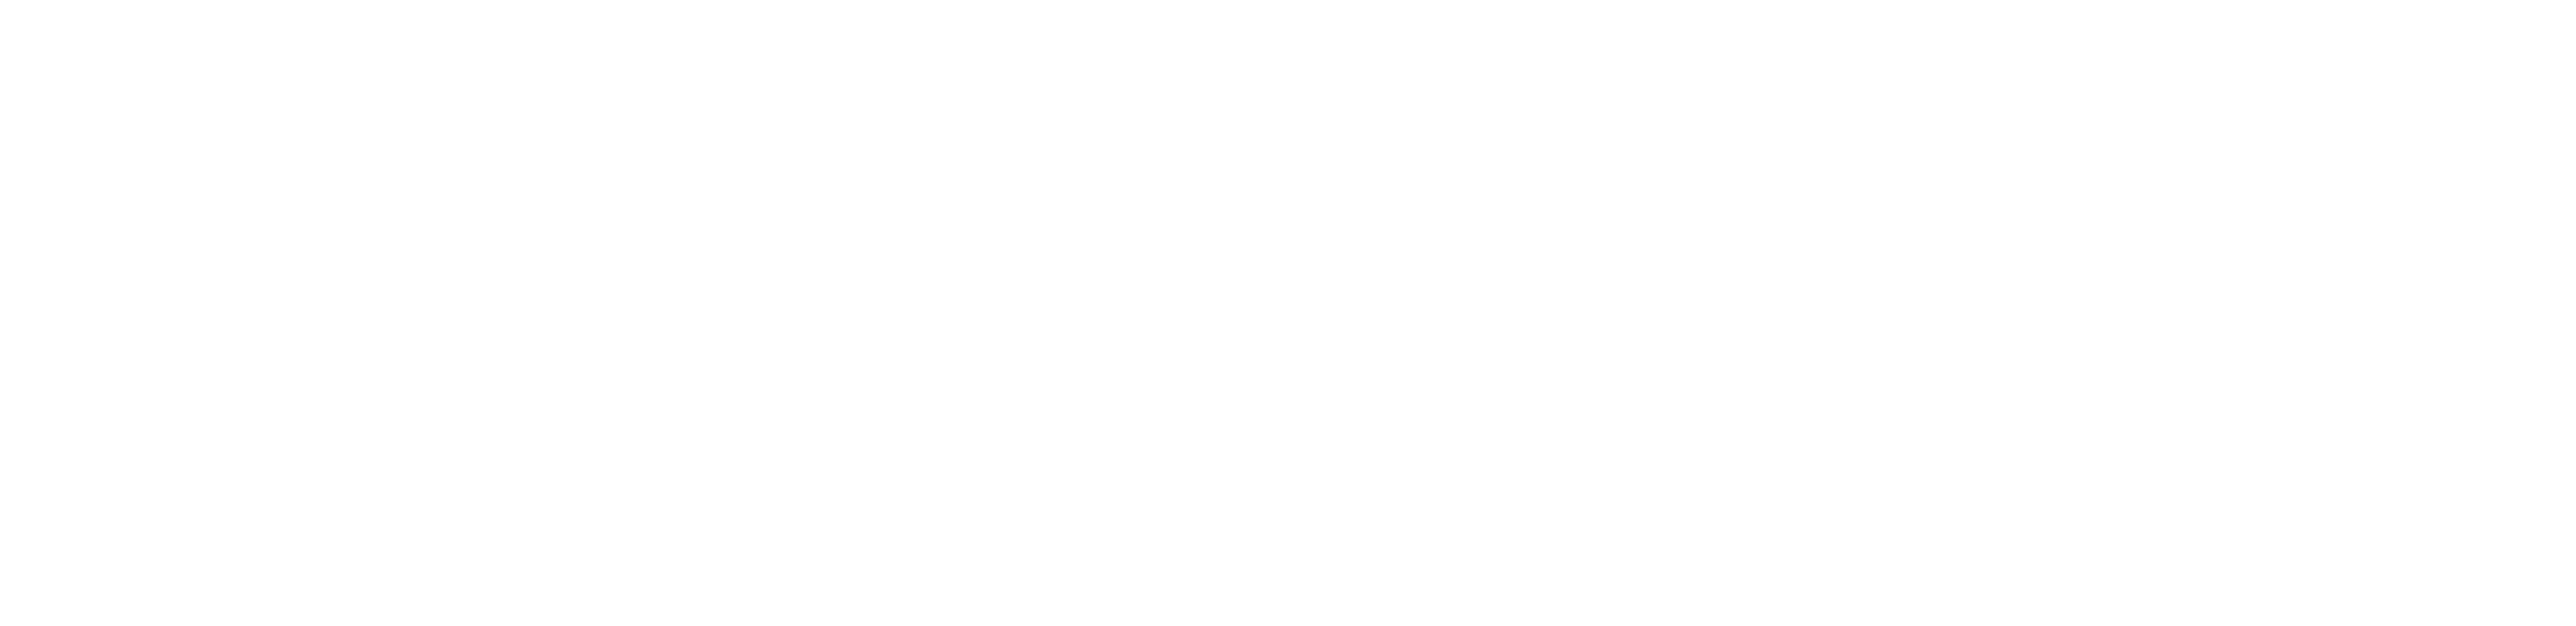 srata-logo-white